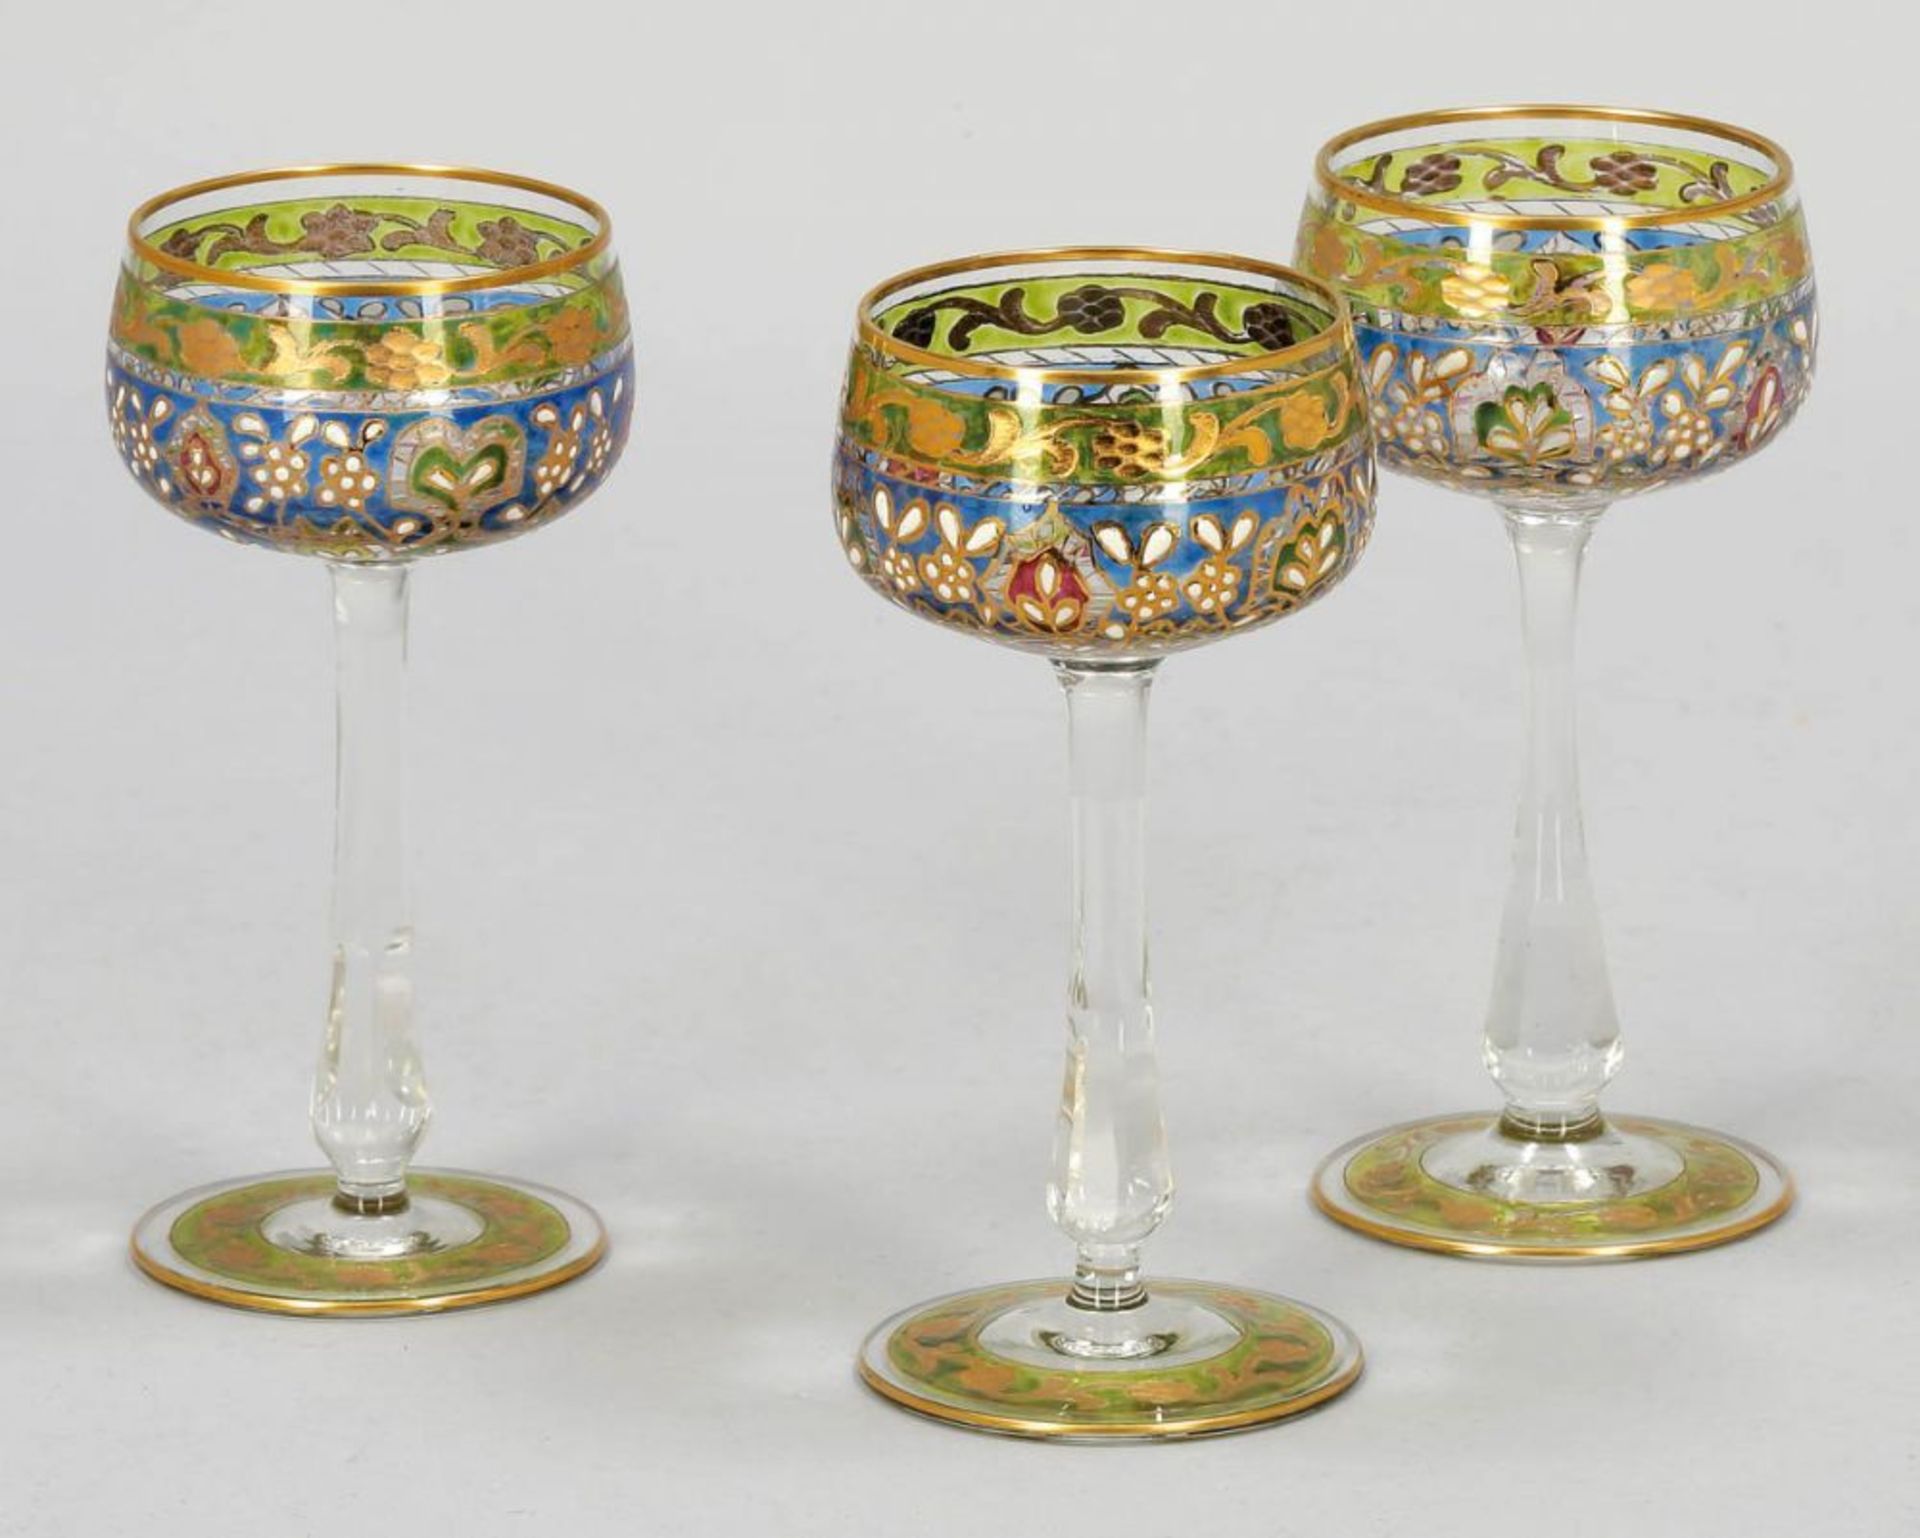 3 Likörgläser "Jodhpur" Petersdorfer Glashütte Fritz Heckert, um 1900. Farbloses Glas.